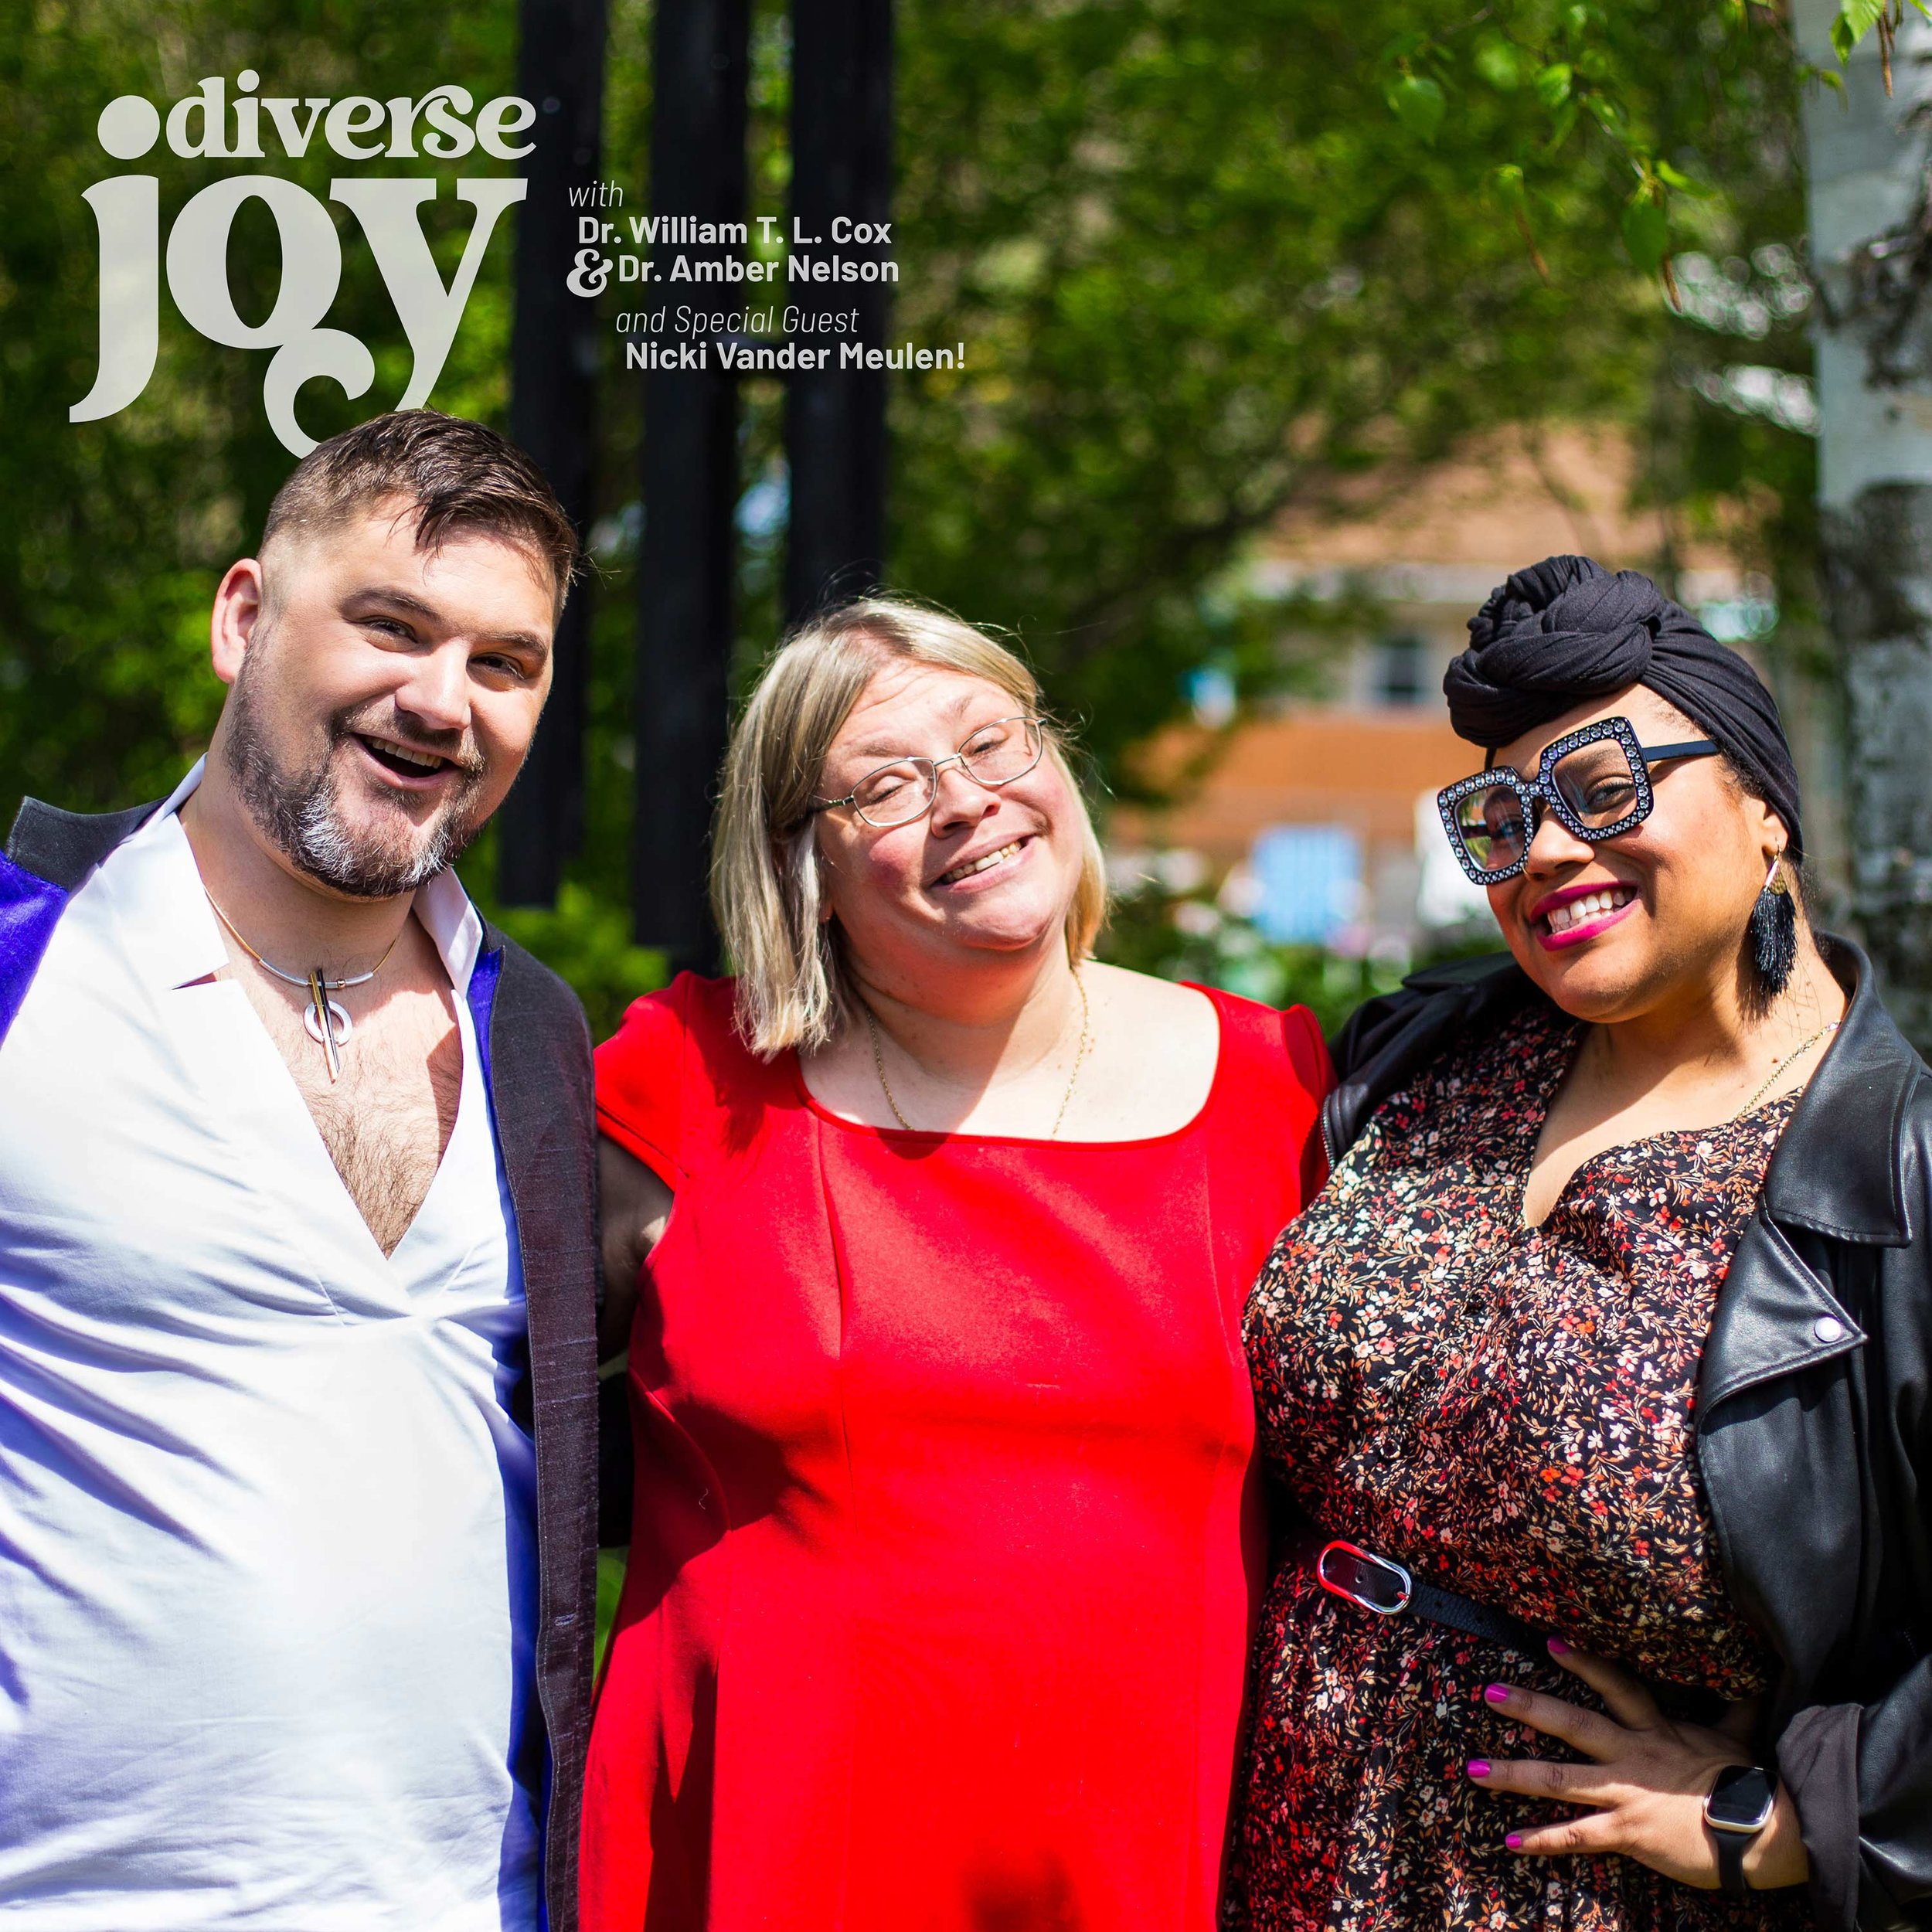 Diverse-Joy-S01E04-Covers_PodBean.jpg